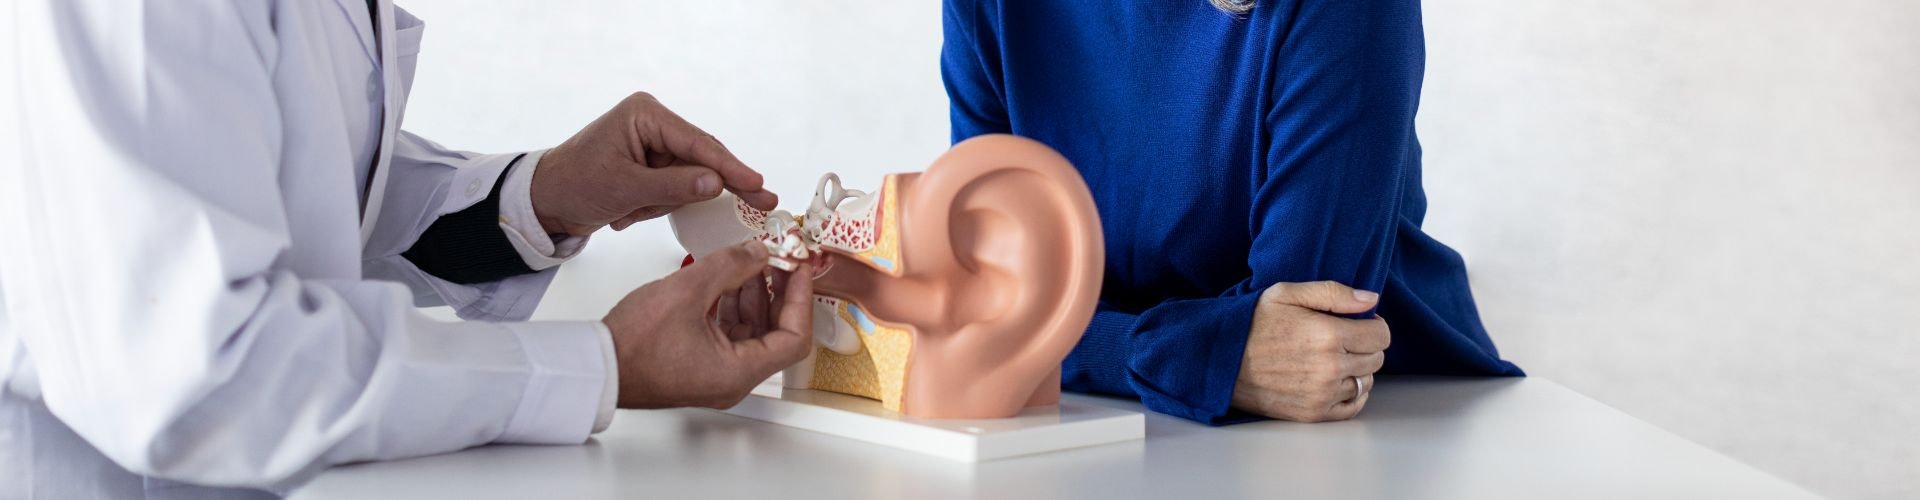 Cómo funciona la audición